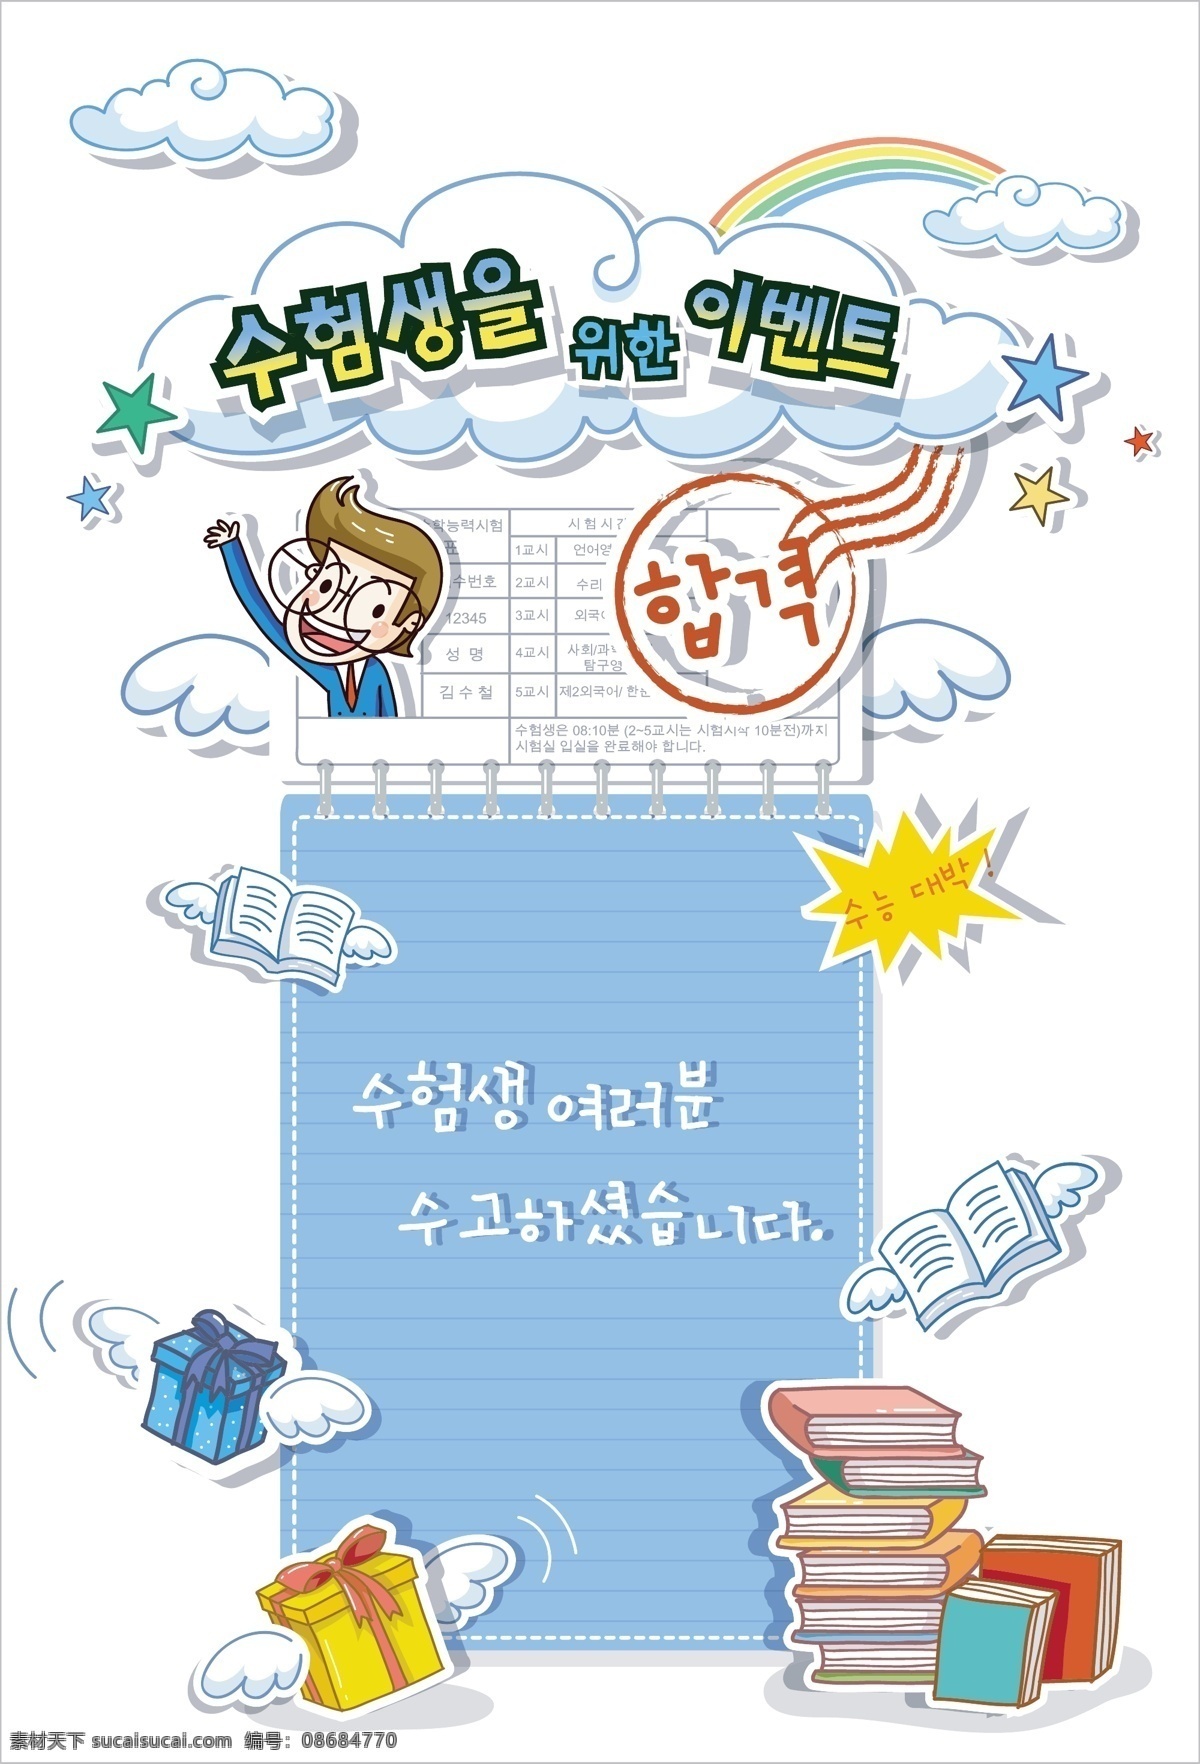 最新 韩国 矢量 卡通 标签cdr 卡通cdr 卡通素材 女孩卡通图 男孩卡通图 矢量图 其他矢量图